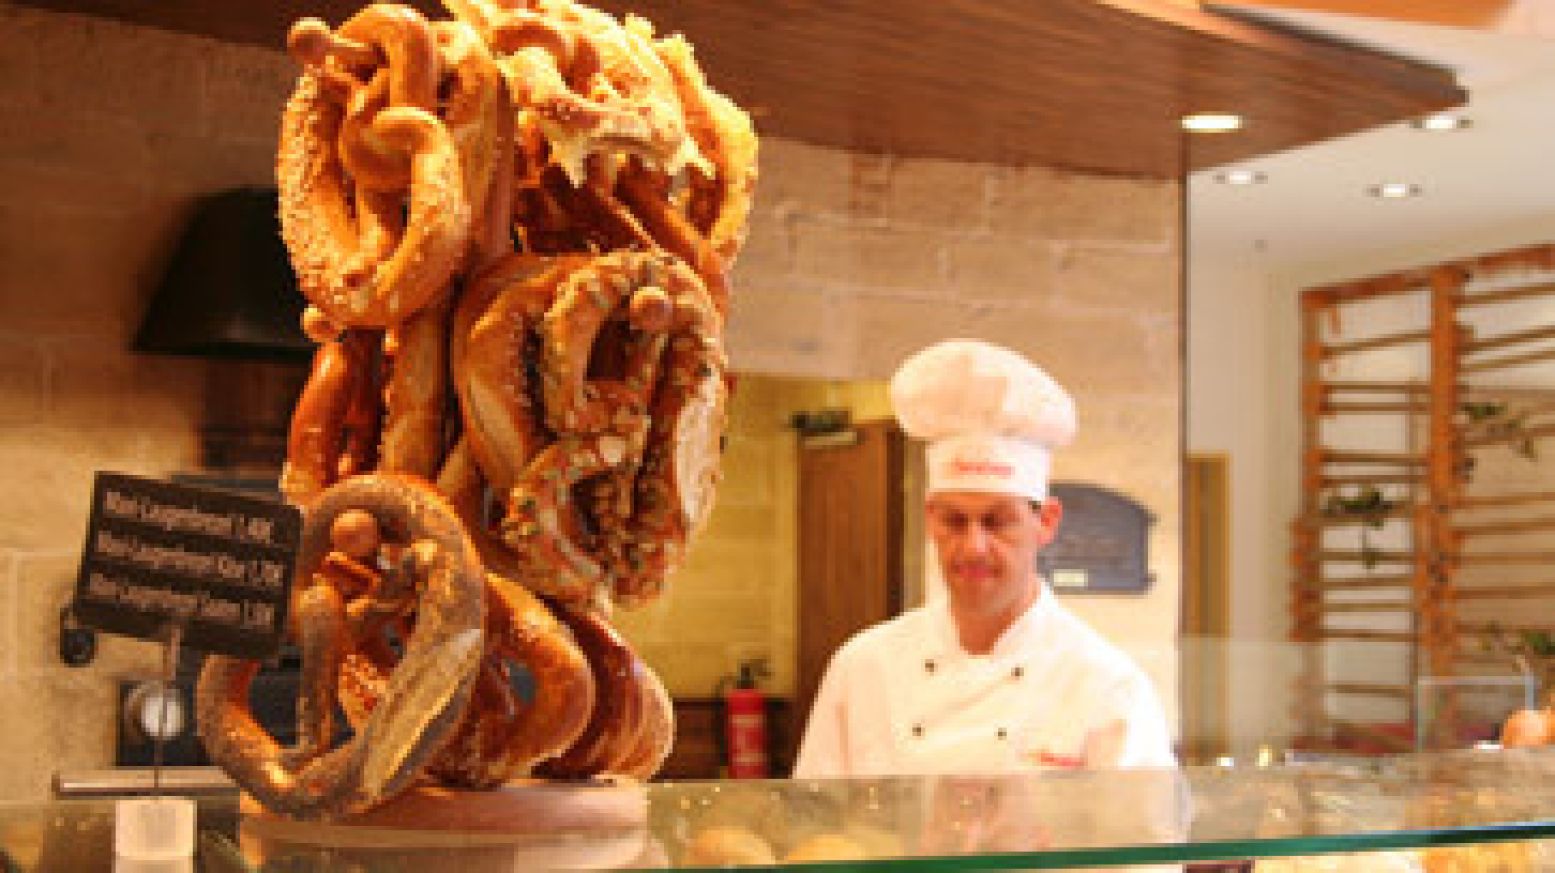 Geniet van de lekkere Duitse broodjes. Foto: Annette van den Berg.